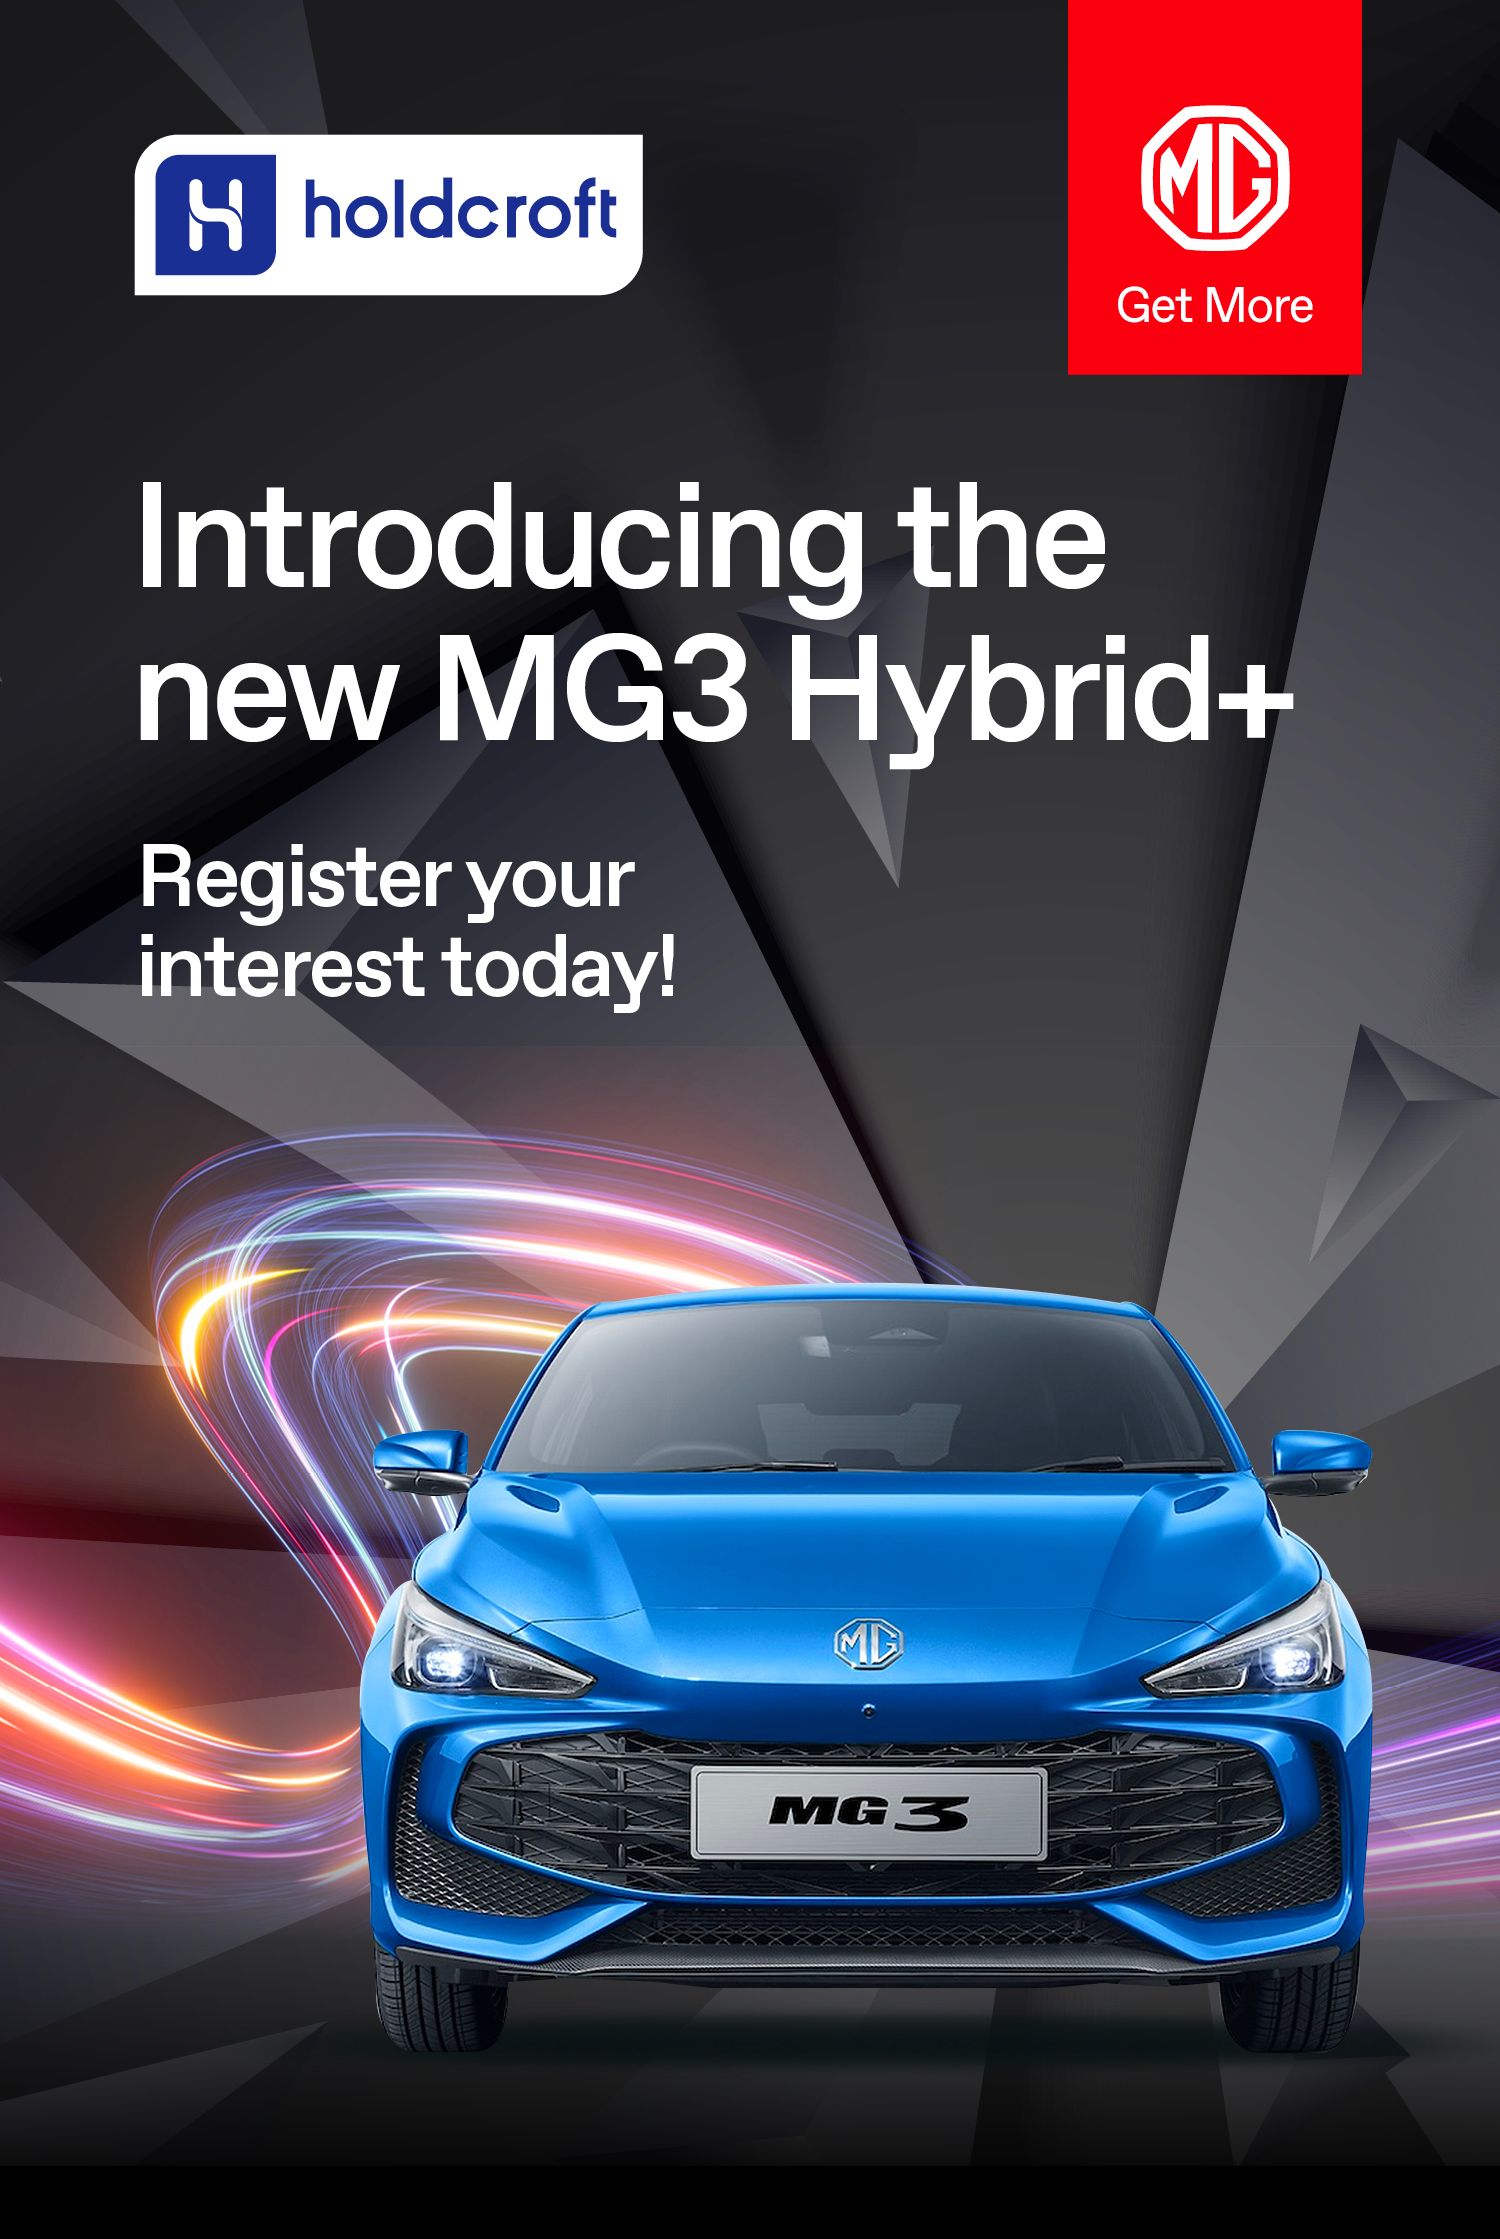 New MG3 Hybrid+ Register Your Interest